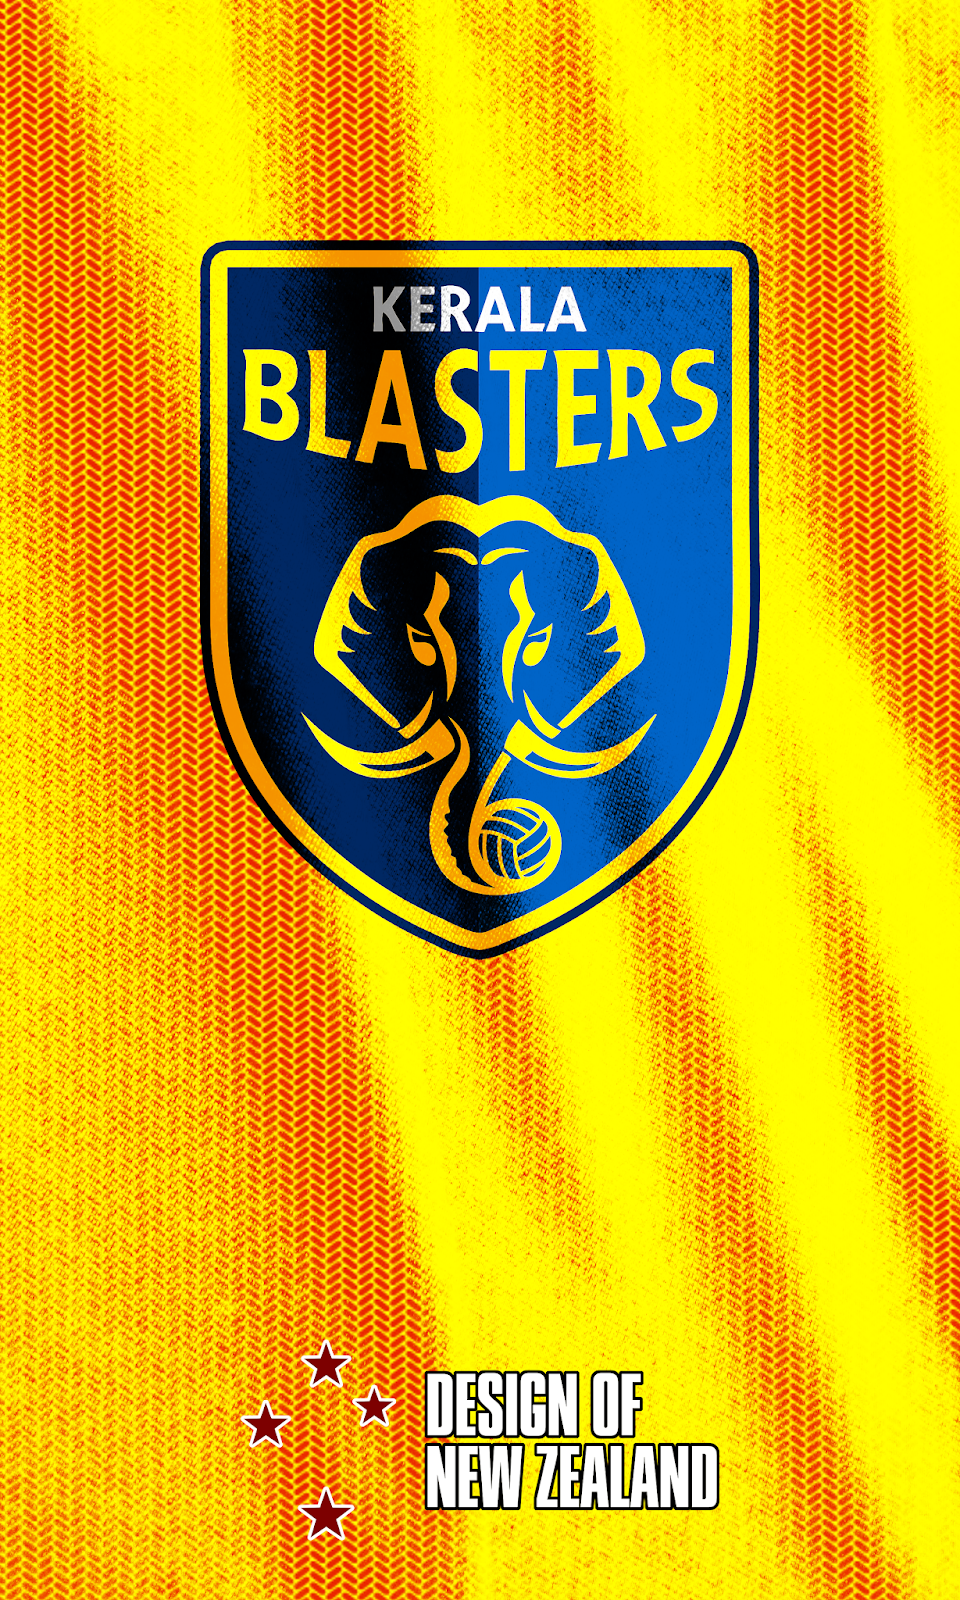 Kerala Blasters Fans added a new photo. - Kerala Blasters Fans